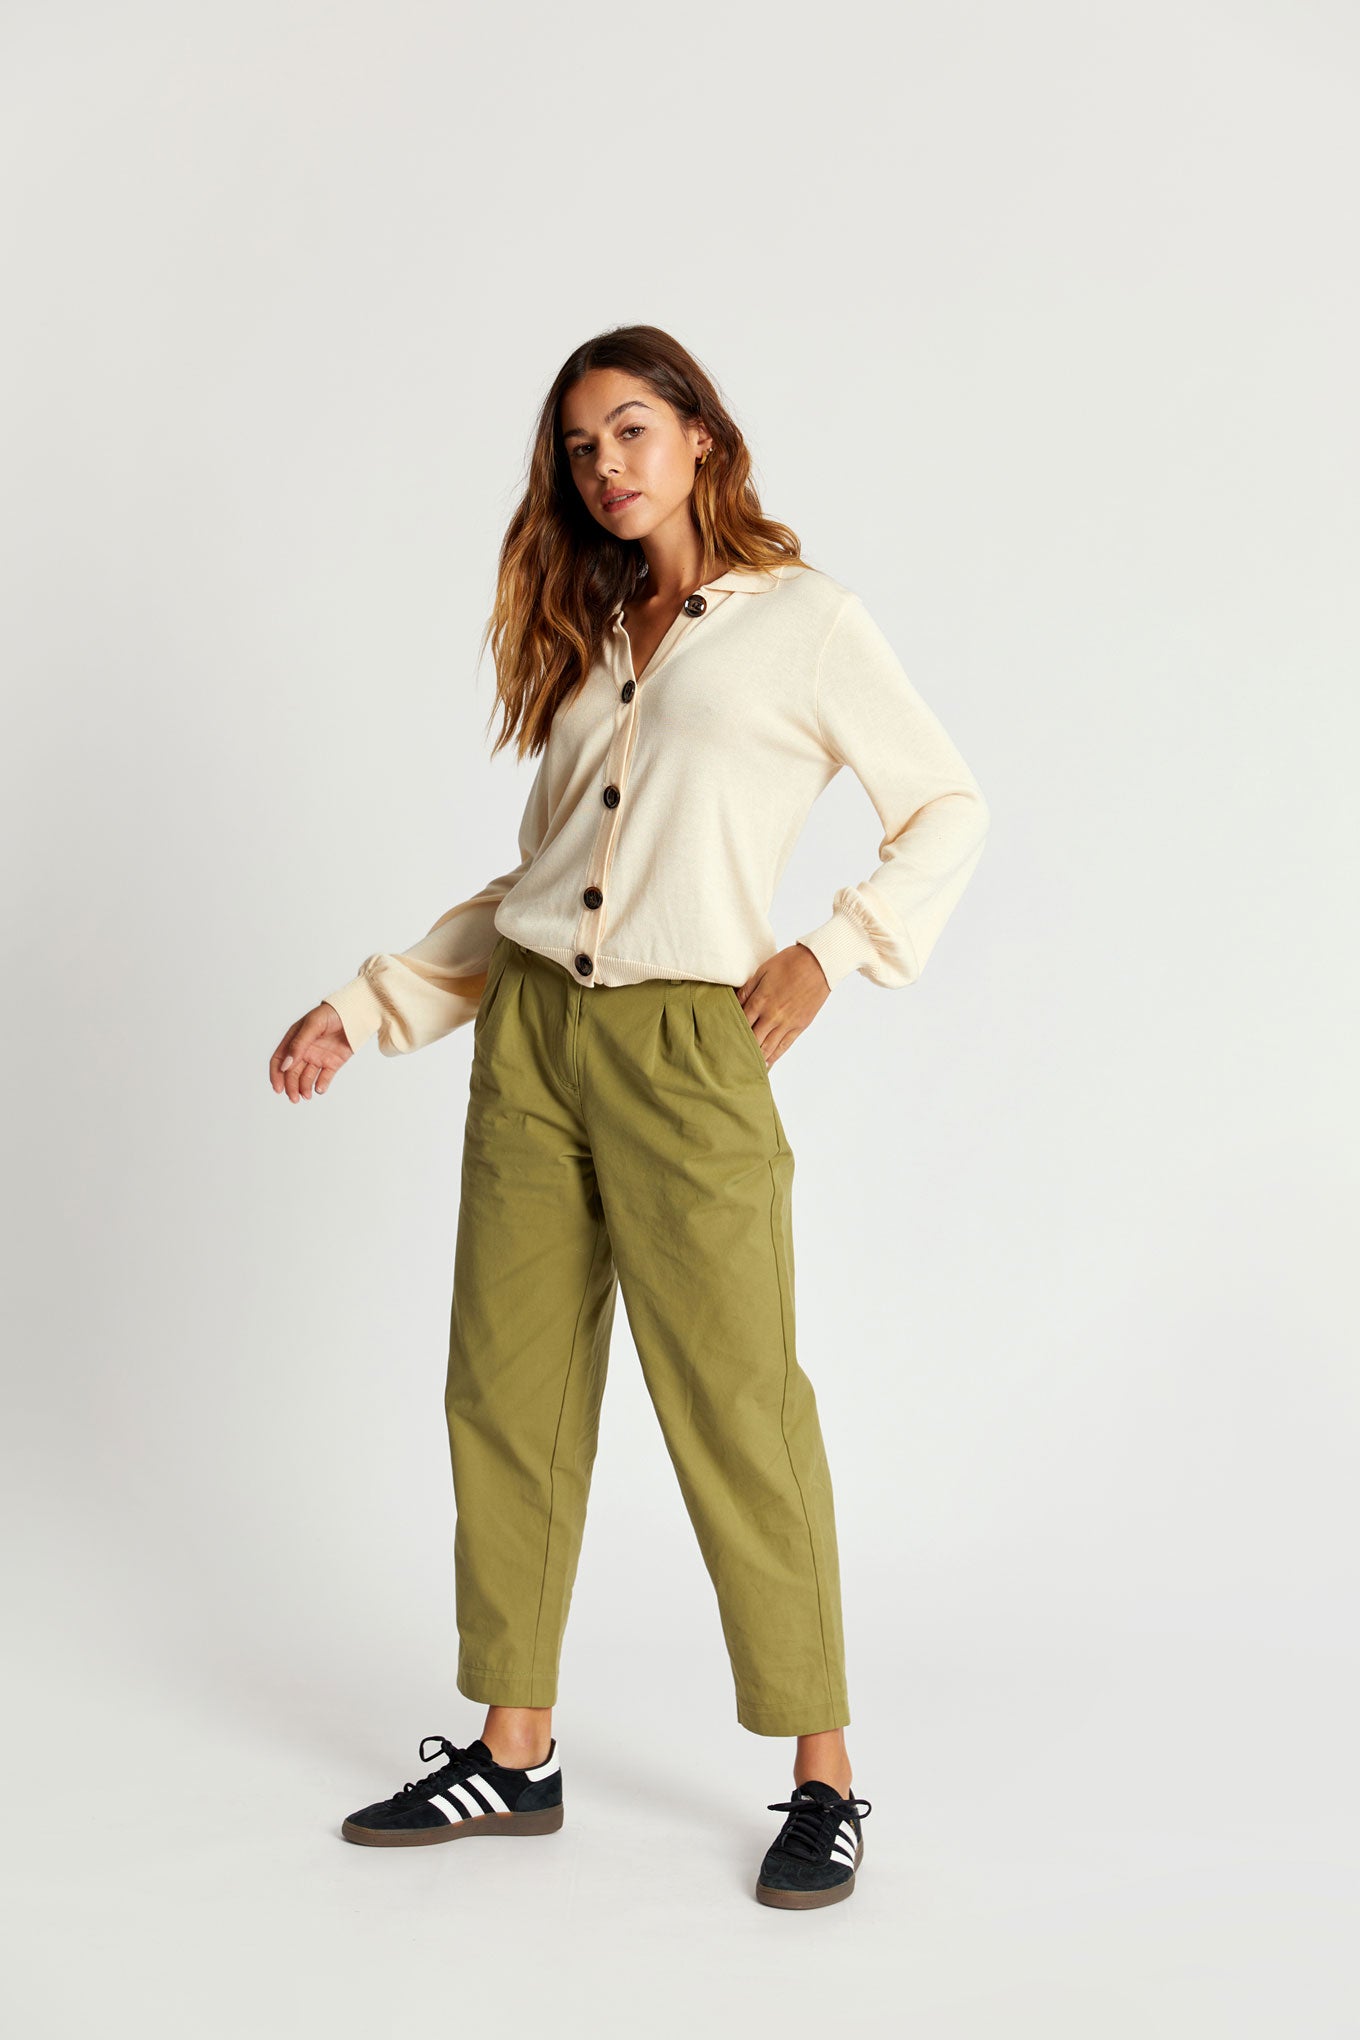 OLIA Organic Cotton Trouser - Khaki Green, SIZE 3 / UK 12 / EUR 40